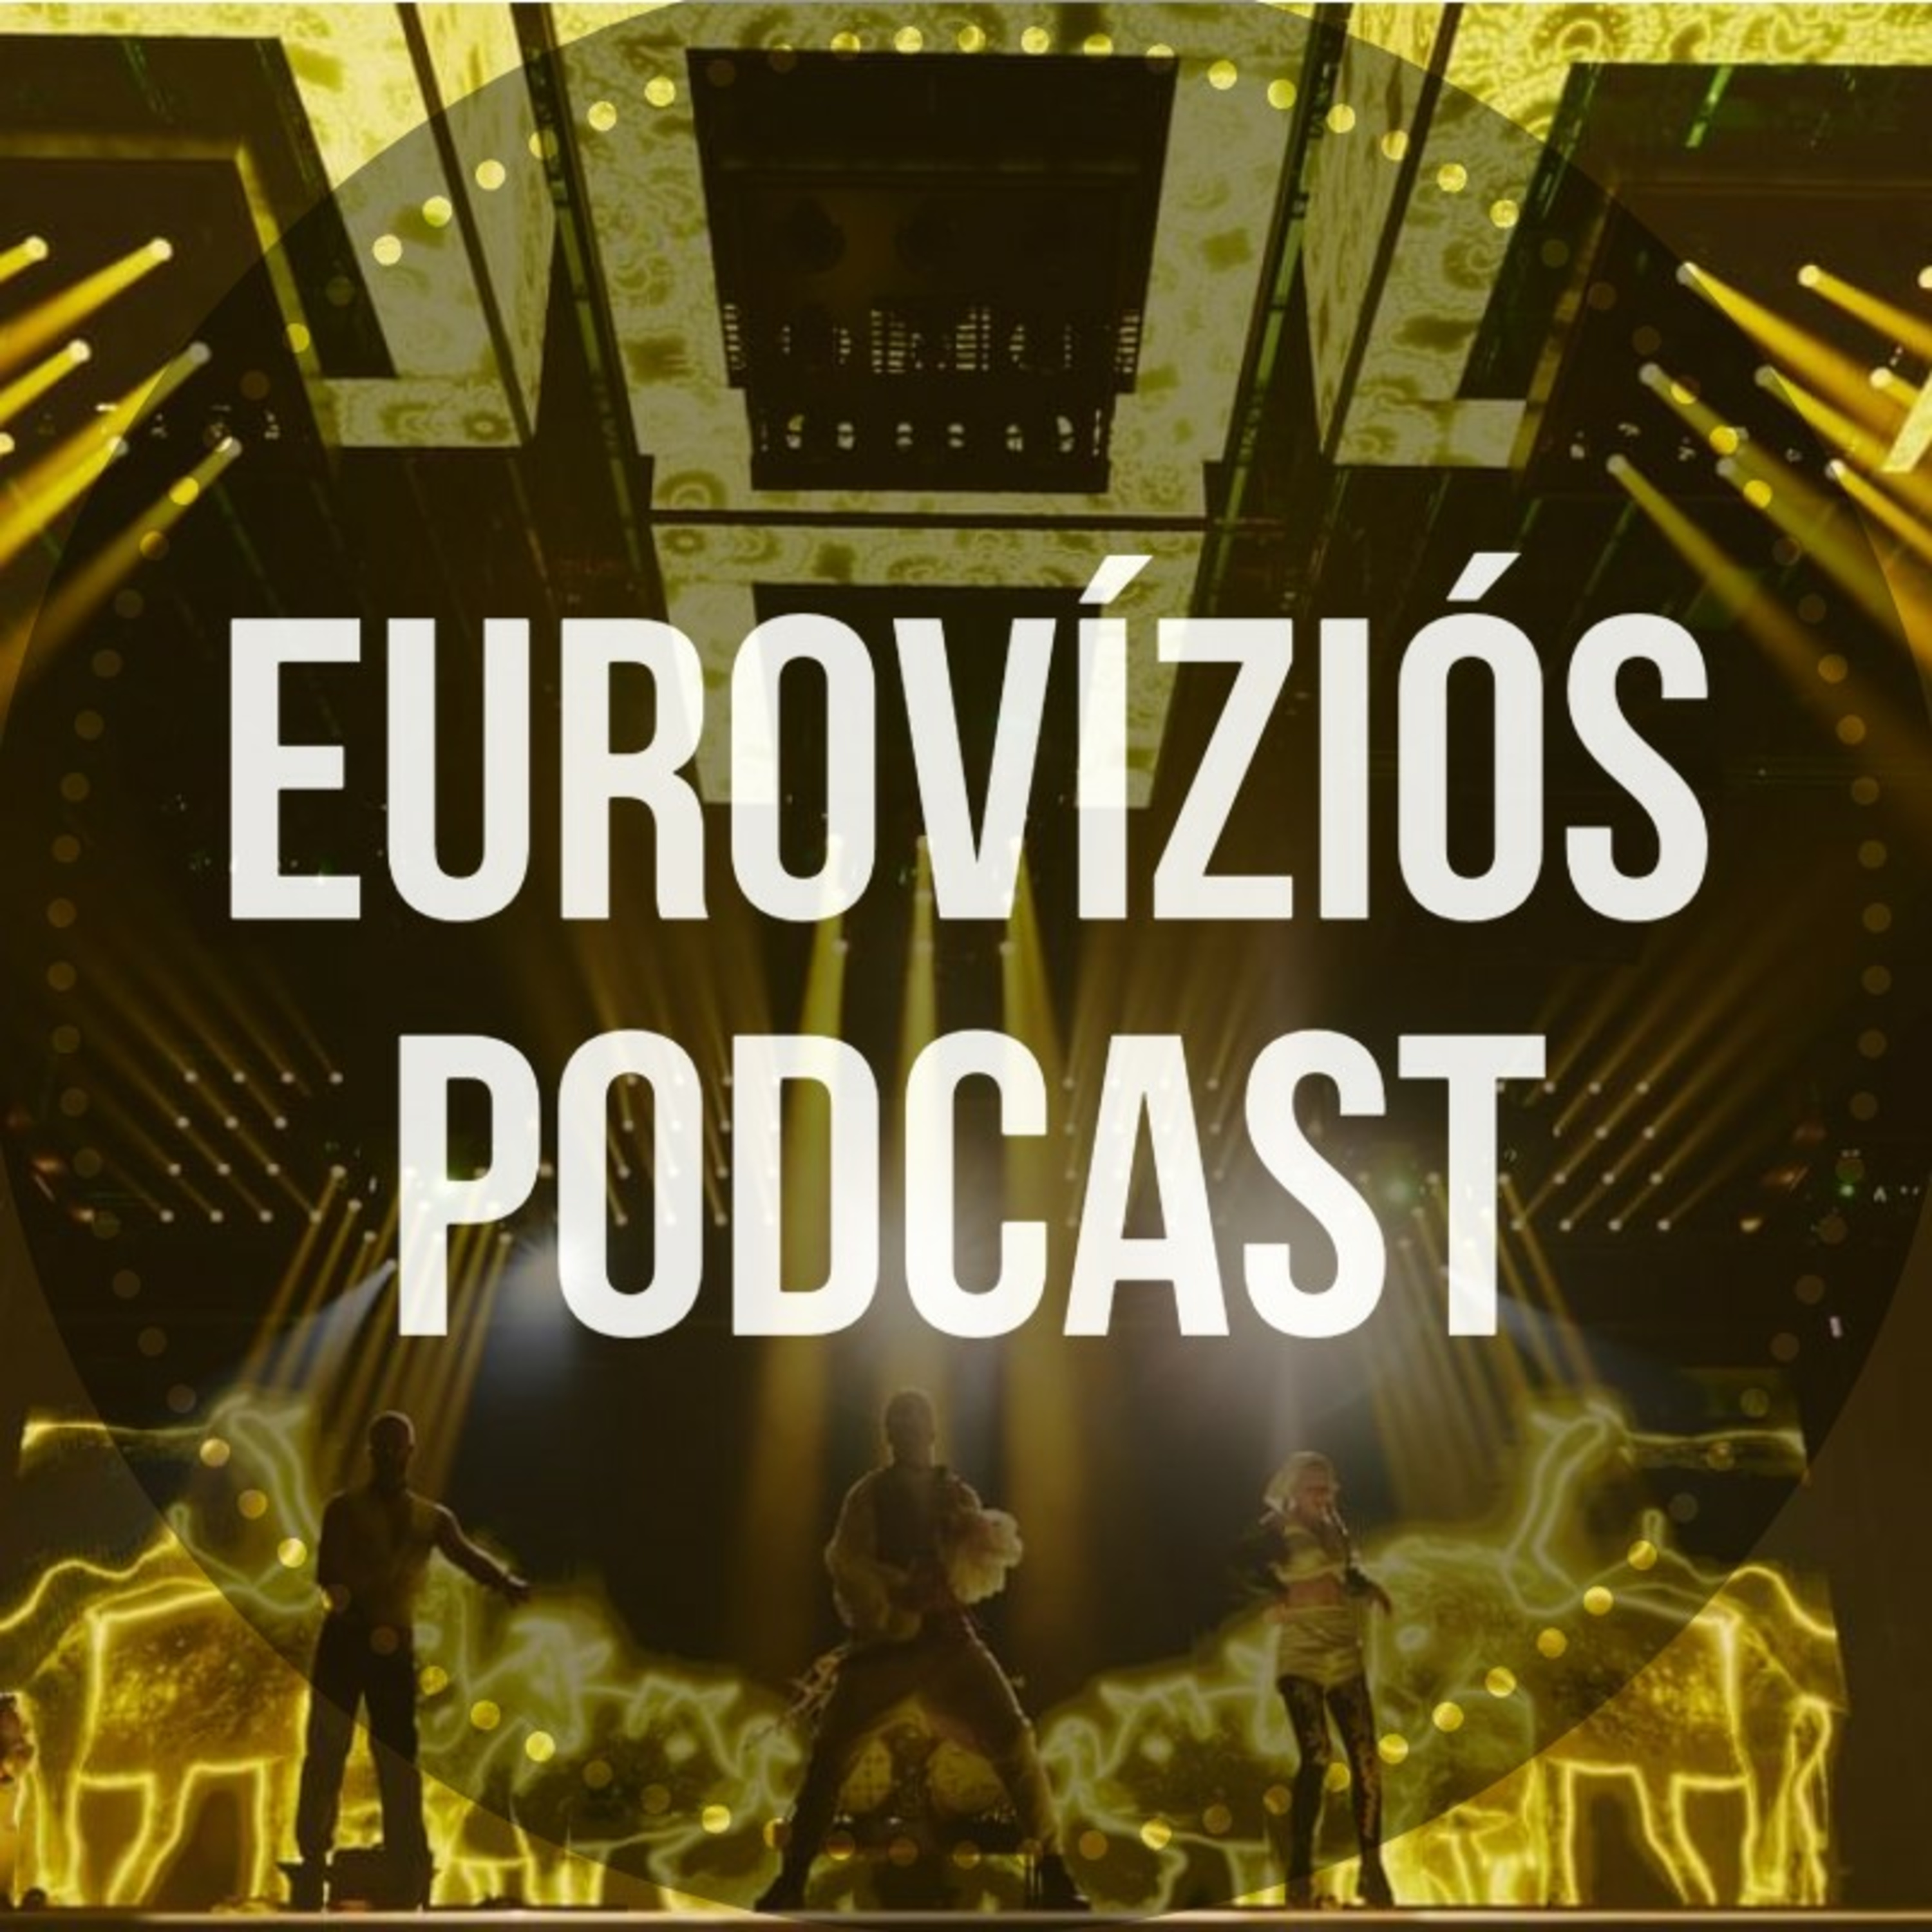 Eurovíziós Podcast - 7. rész - Eurovíziós Híradó #34 - Itt az Eurovíziós Hét! - A Dal mélyrepülésben